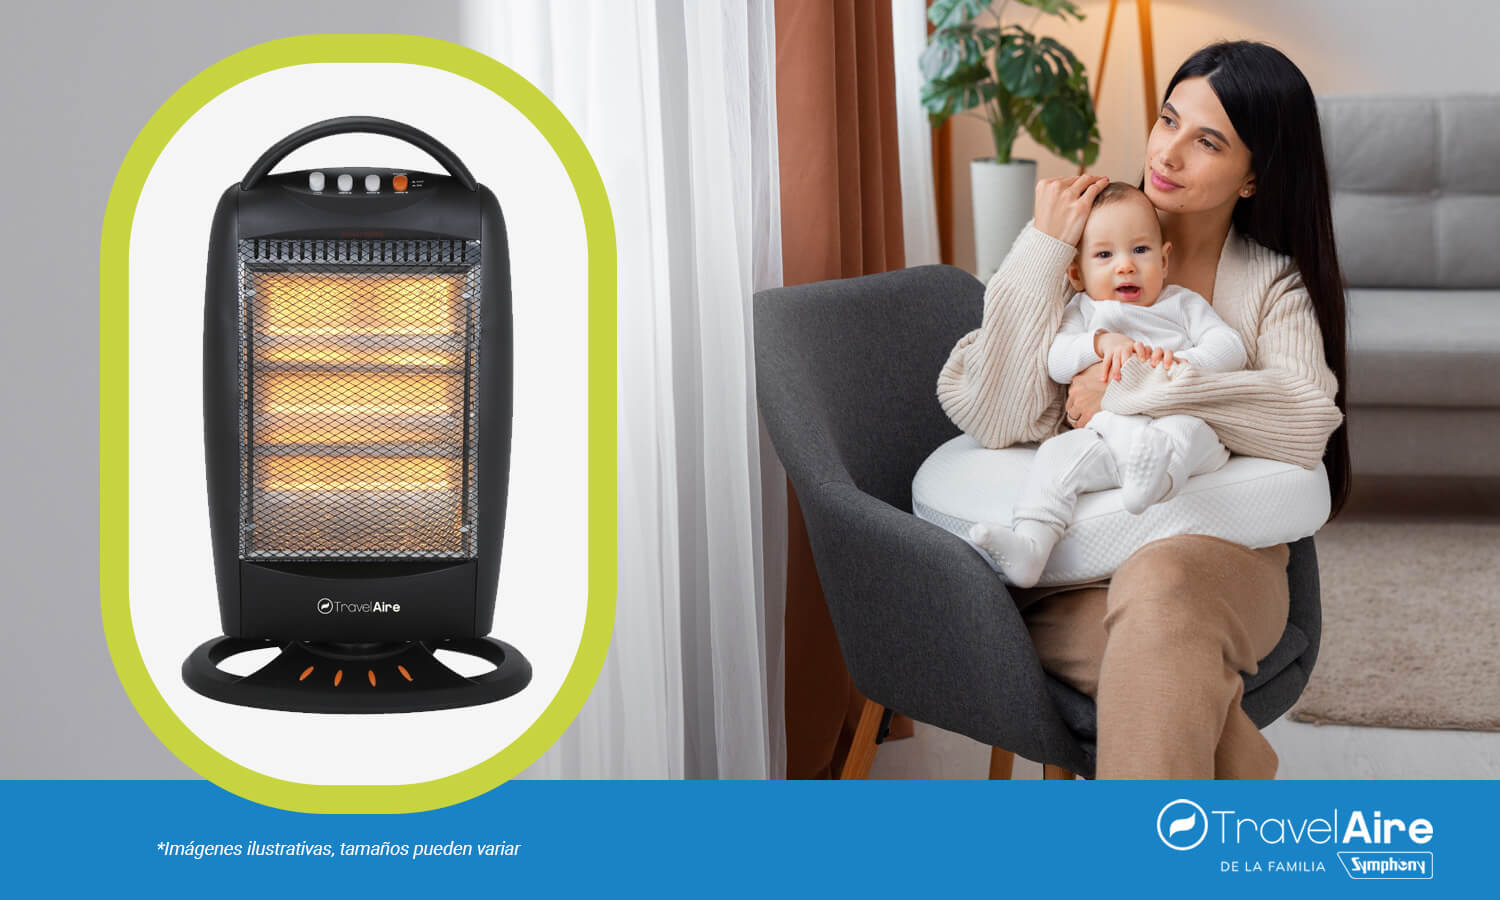 Los calefactores son ideales para mantener una temperatura agradable en la habitación del bebé.